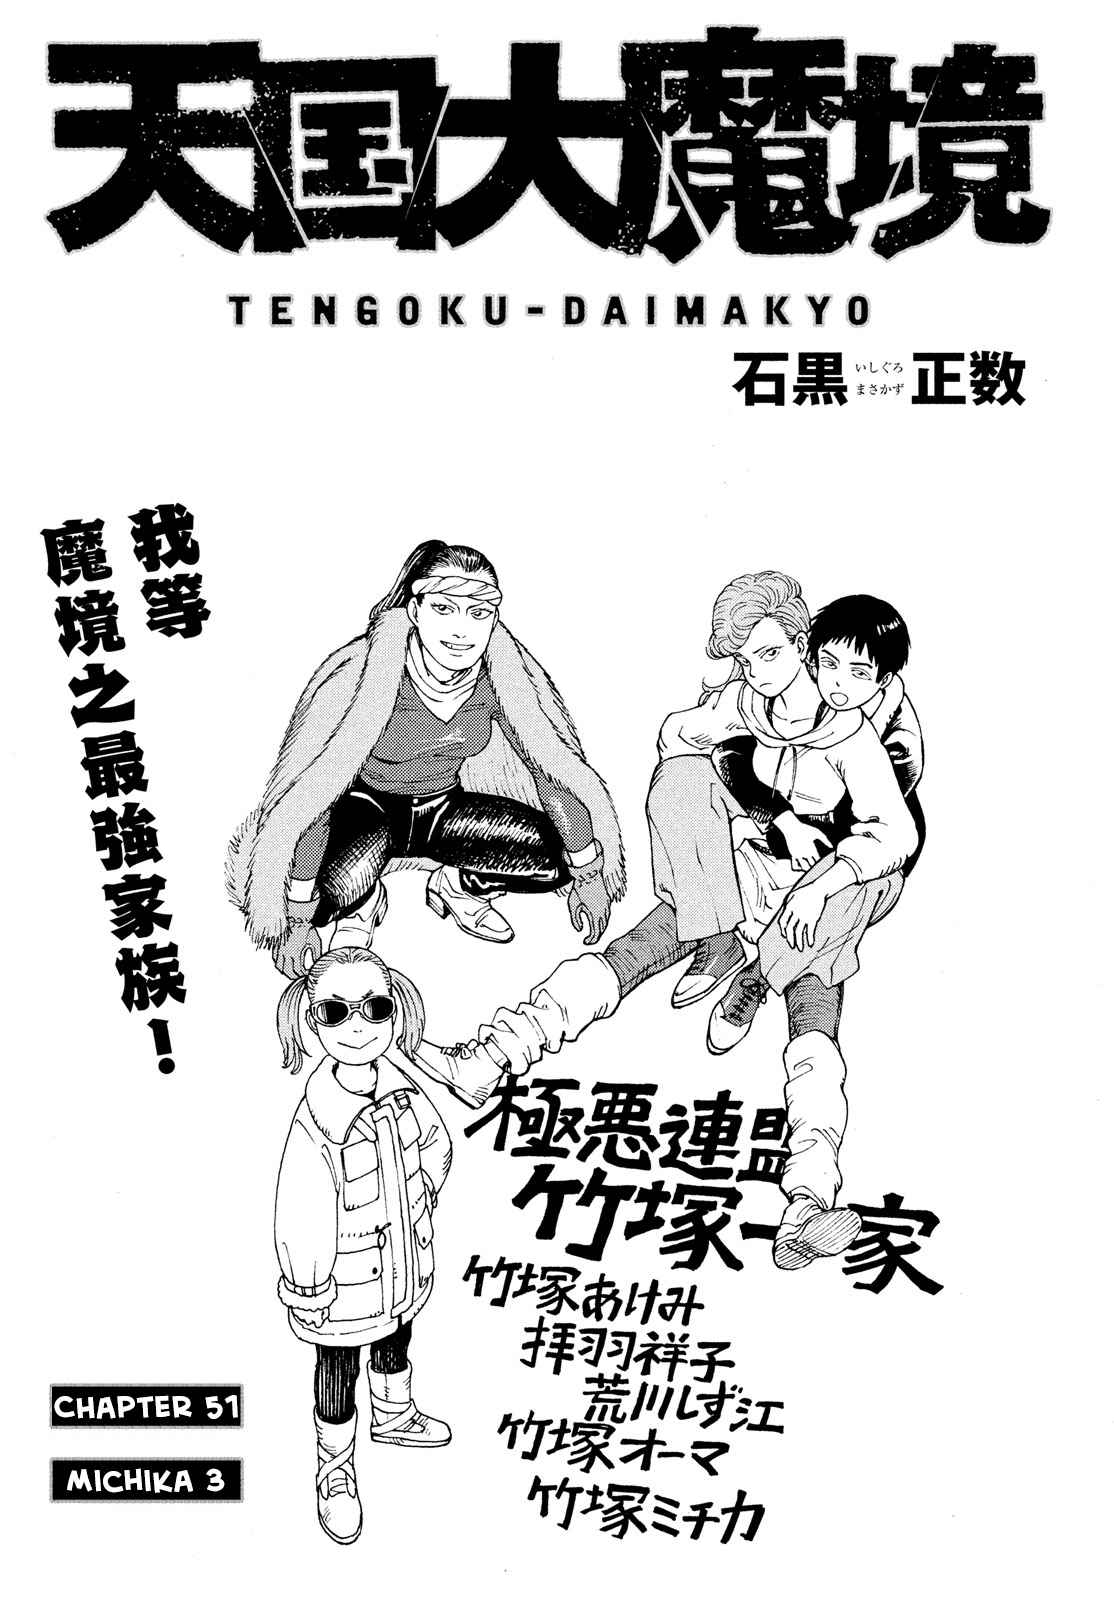 Tengoku Daimakyou 51